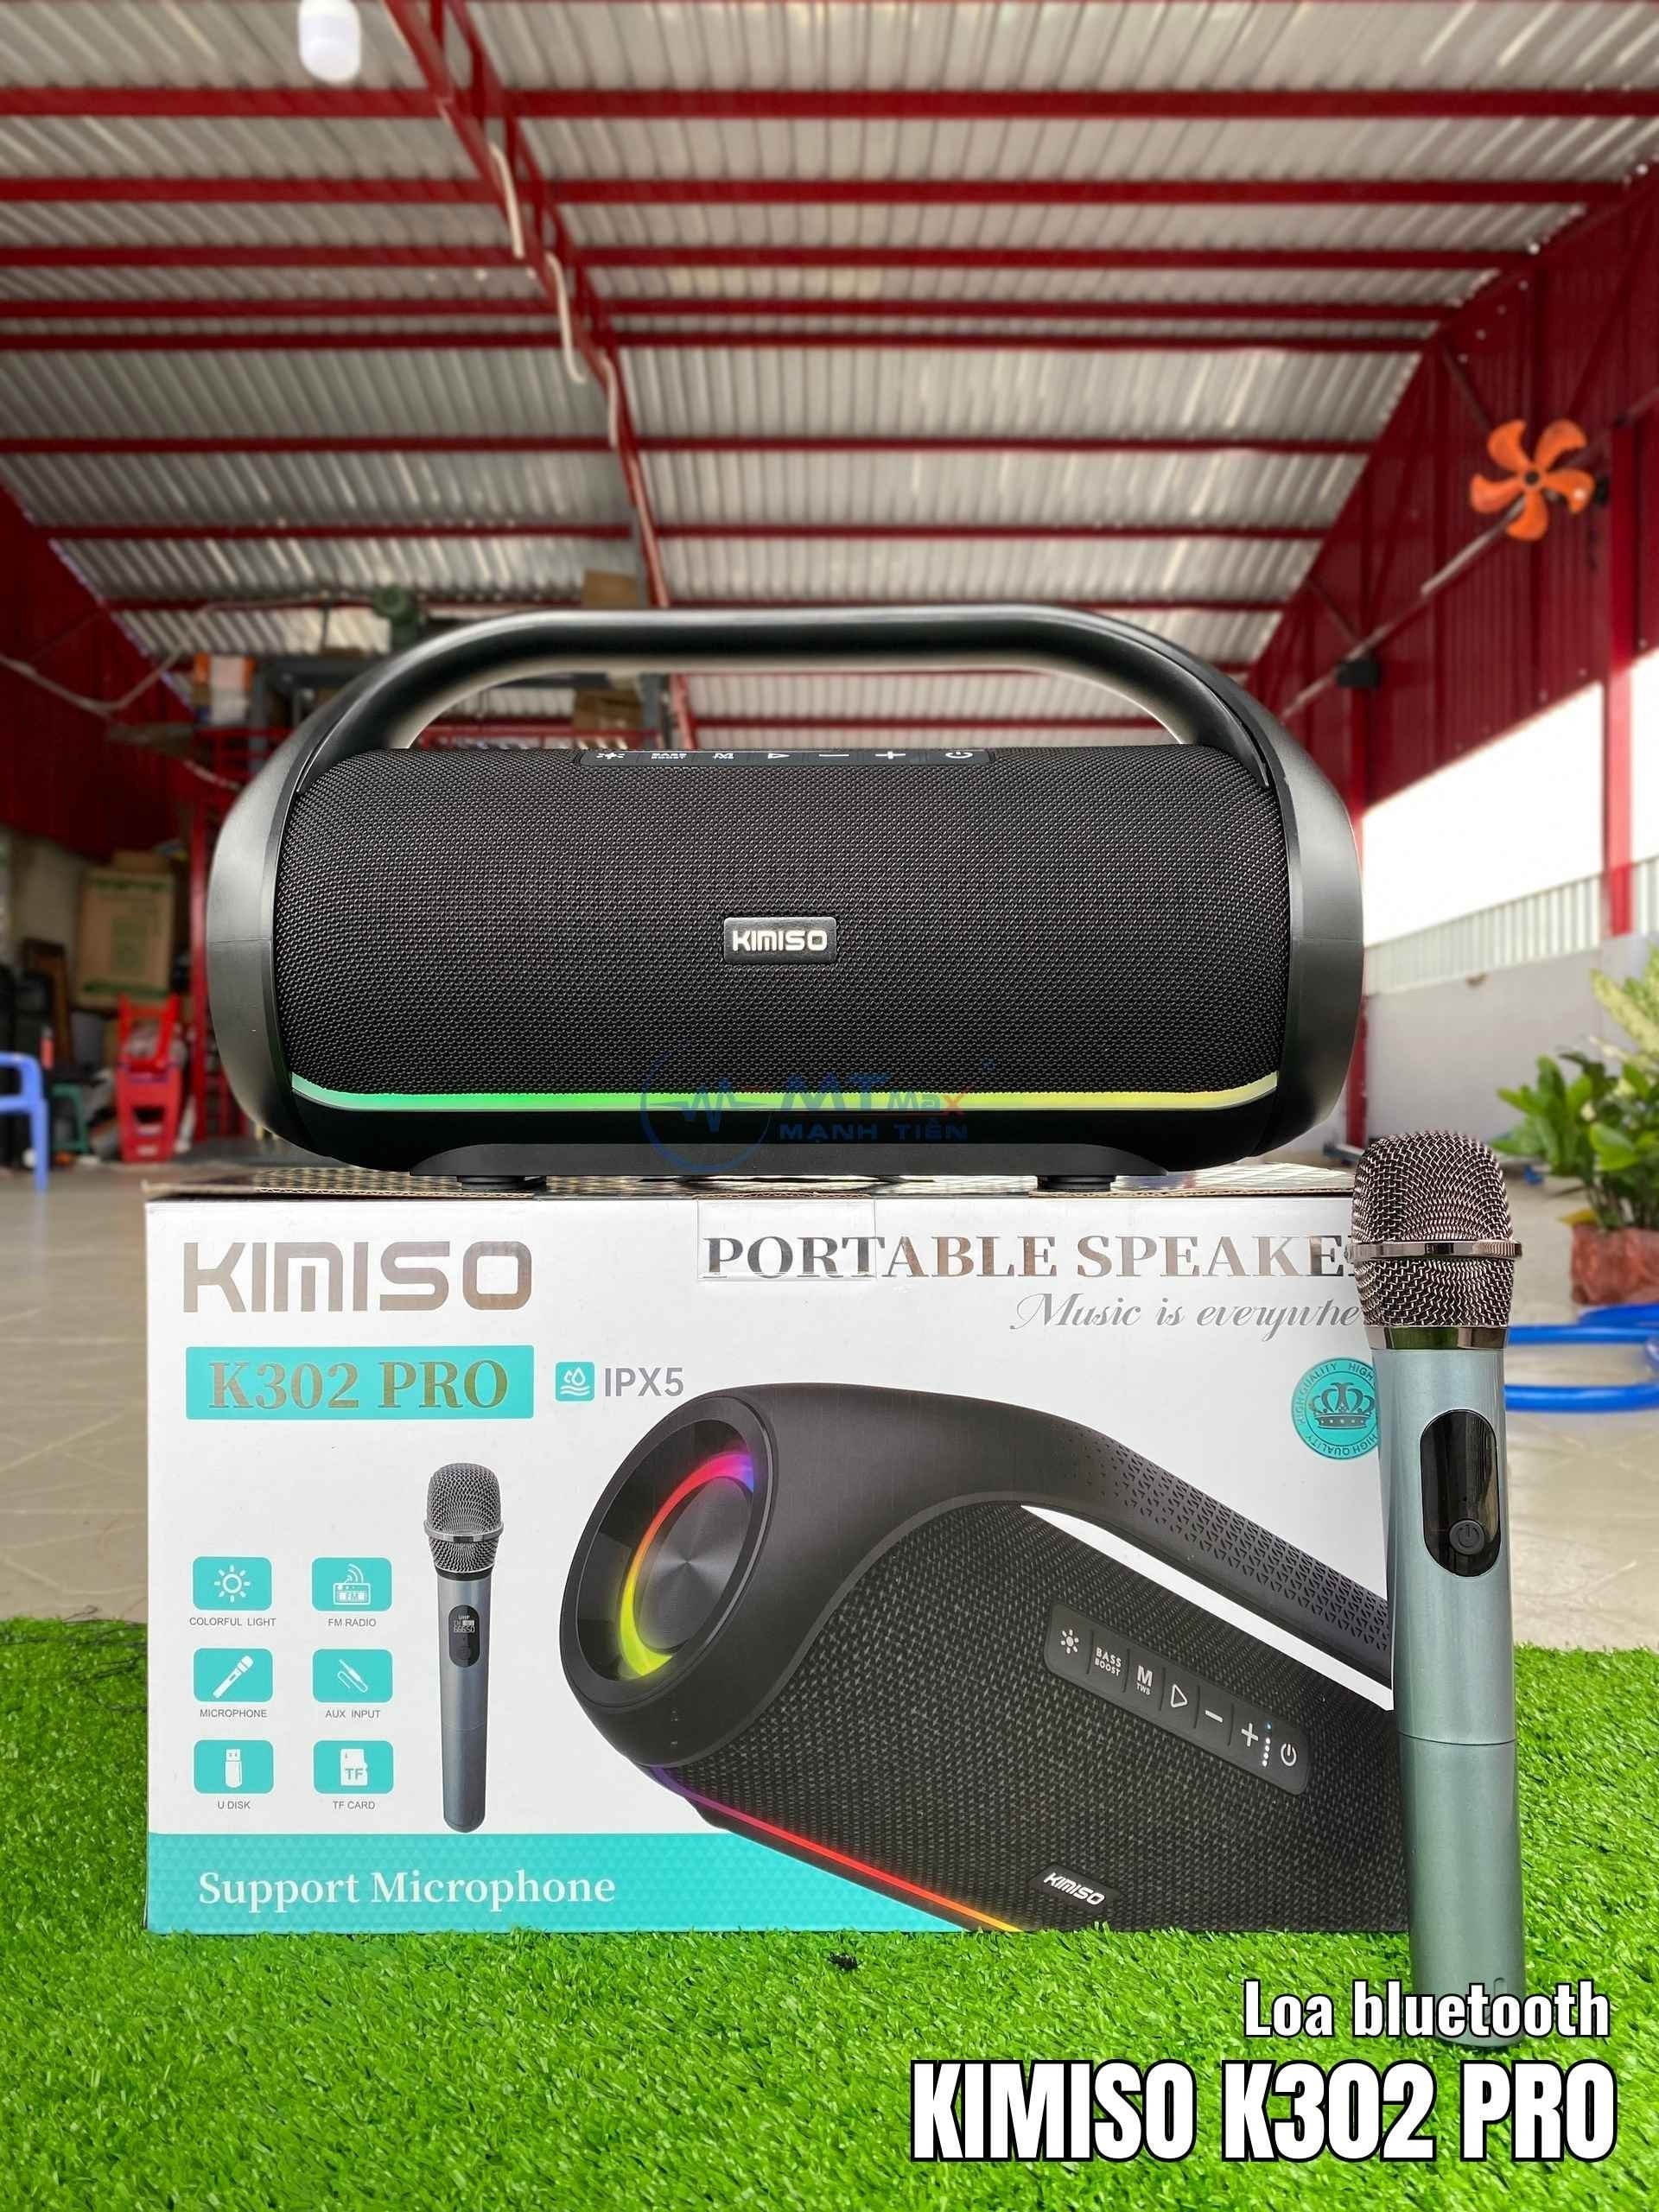 Loa Bluetooth KIMISO K302 PRO - Tích Hợp Micro Karaoke, Đa Dạng Cổng Kết Nối Tiện Lợi Pin Trâu Bluetooth 5.0 chống nước 2 bass cực căng